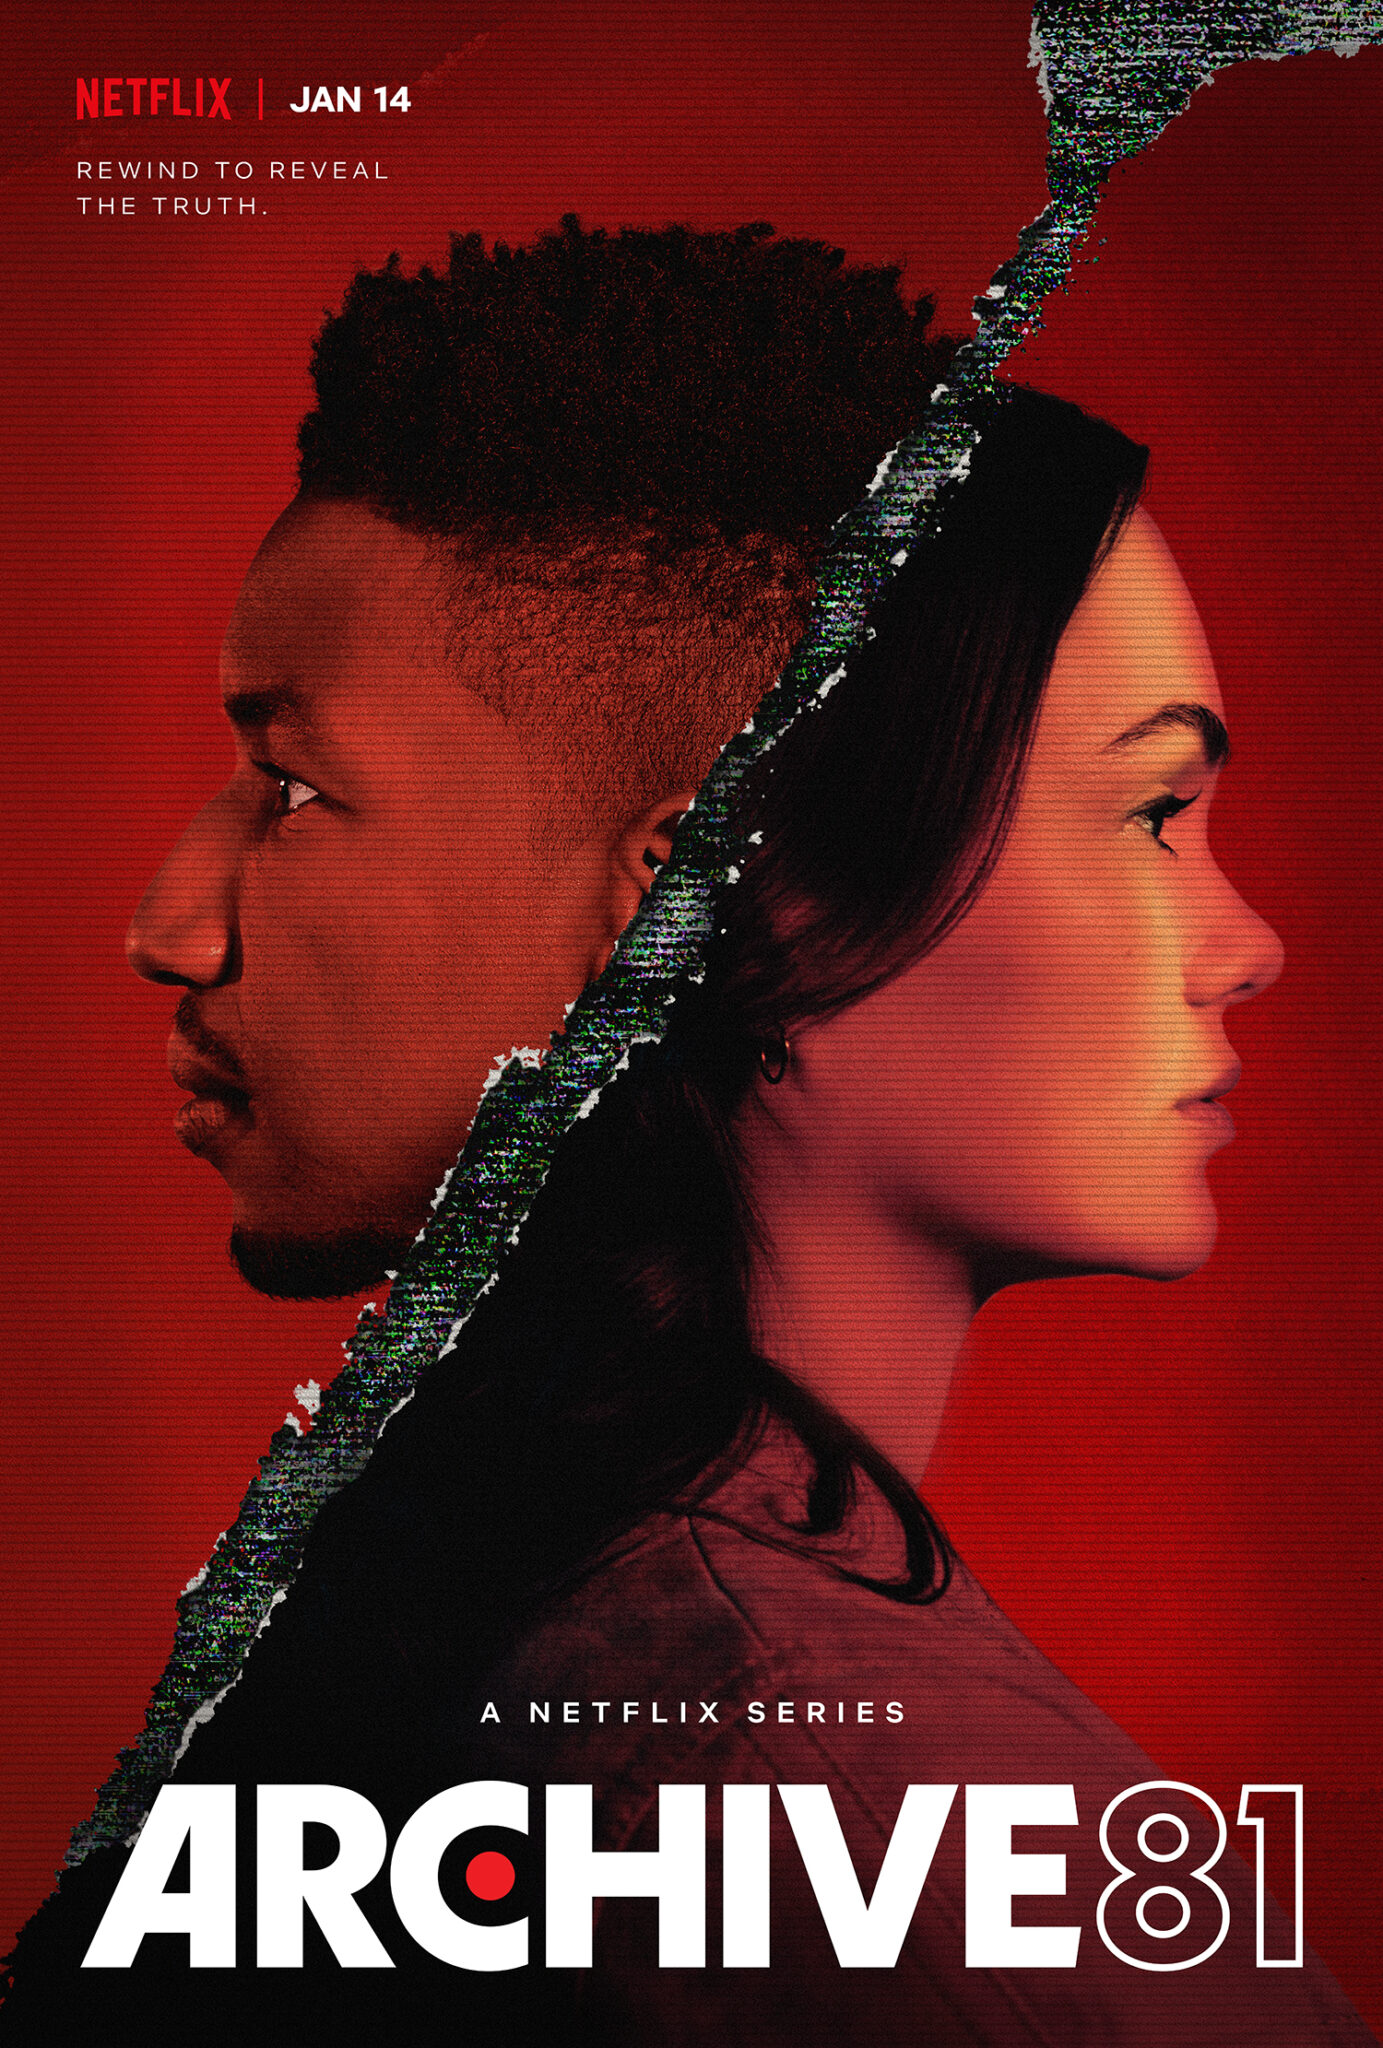 Poster zur Netflix Serie Archive 81 zeigt durch eine Trennlinie unterteilt die Köpfe eines Mannes links und einer Frau rechts. Unten in Großbuchstaben den Titel.